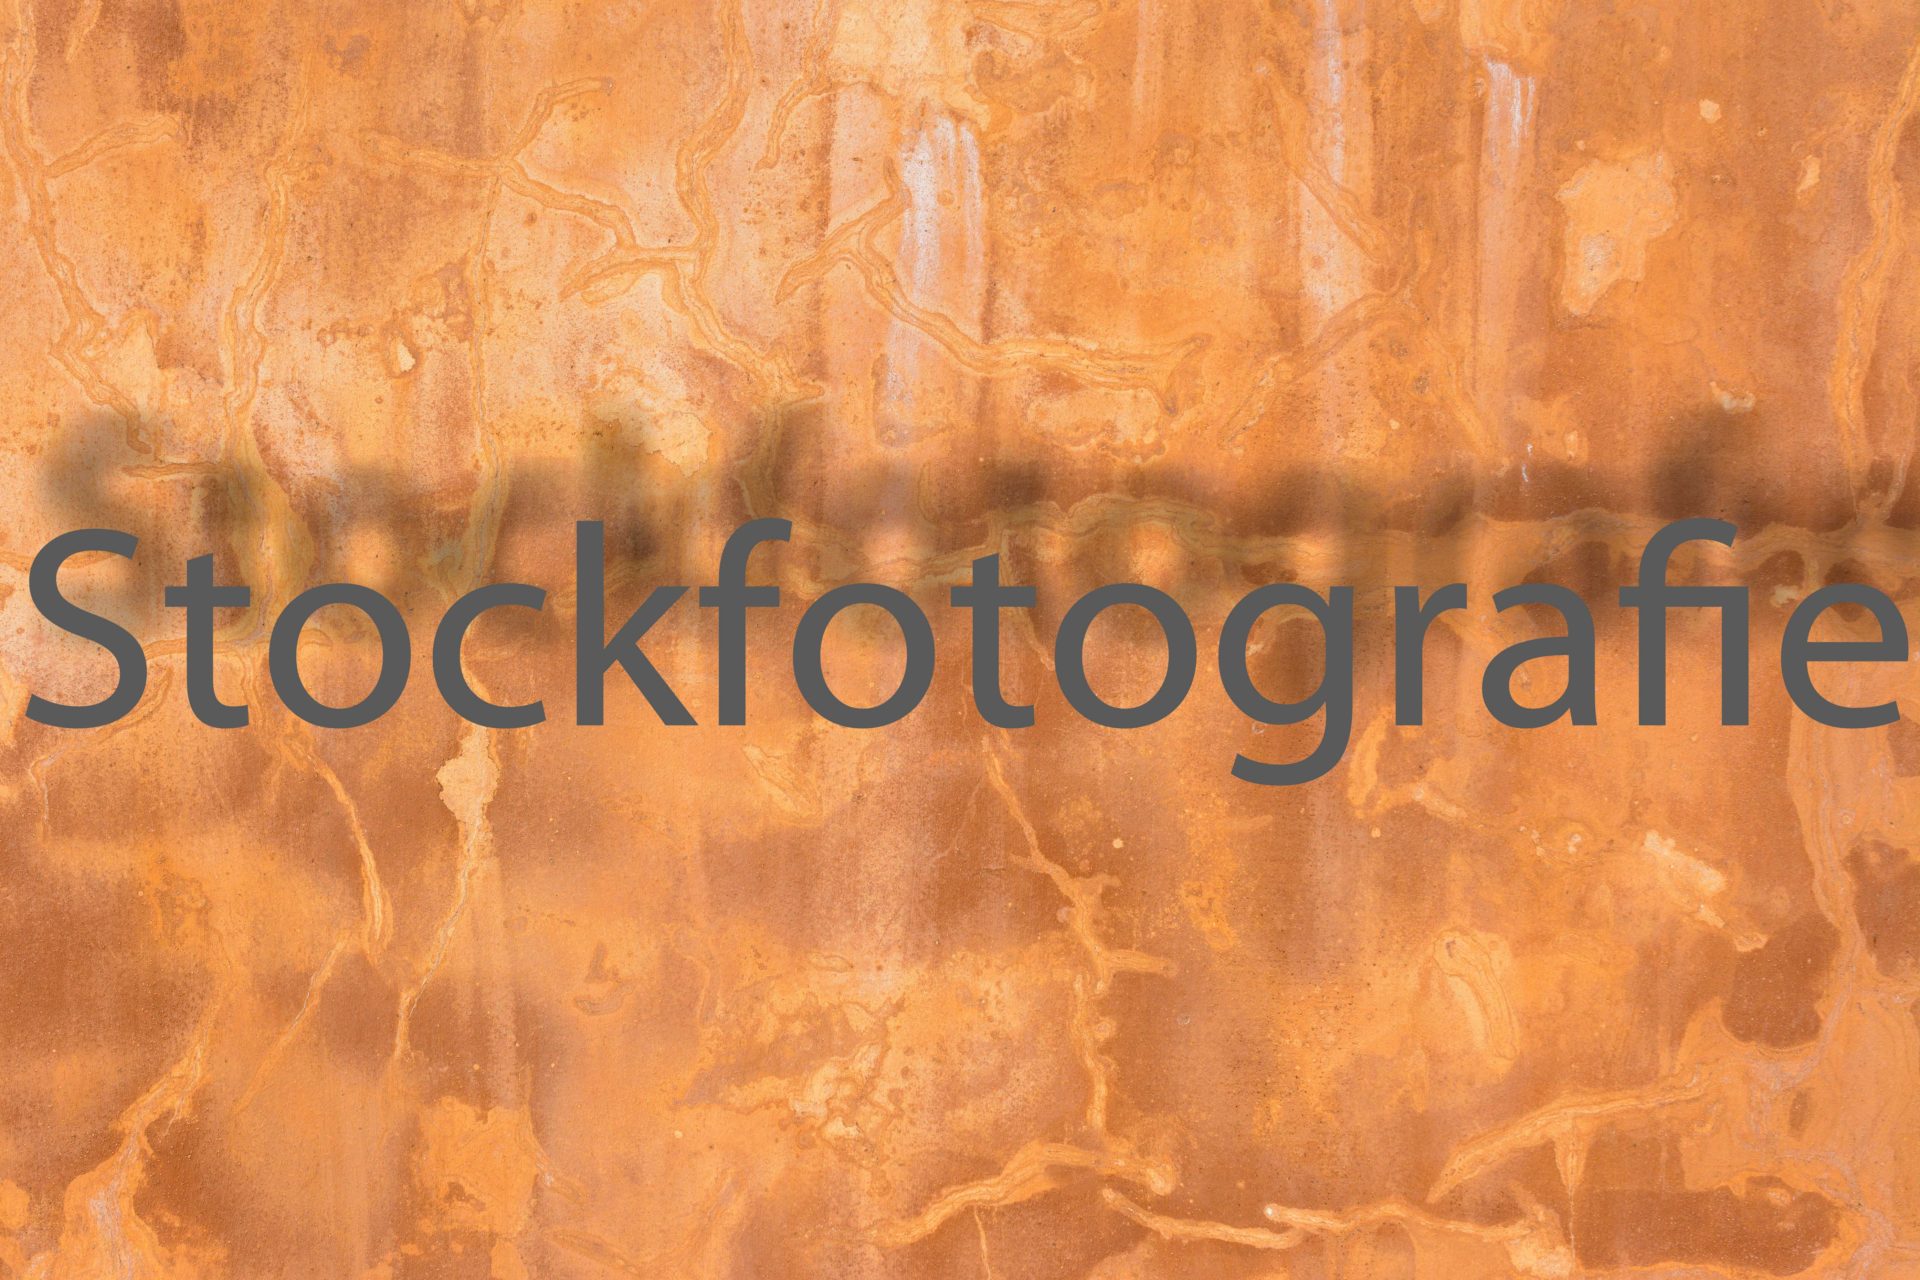 Stockfotografie für Anfänger, Teil 4 Bildbearbeitung & Orga.